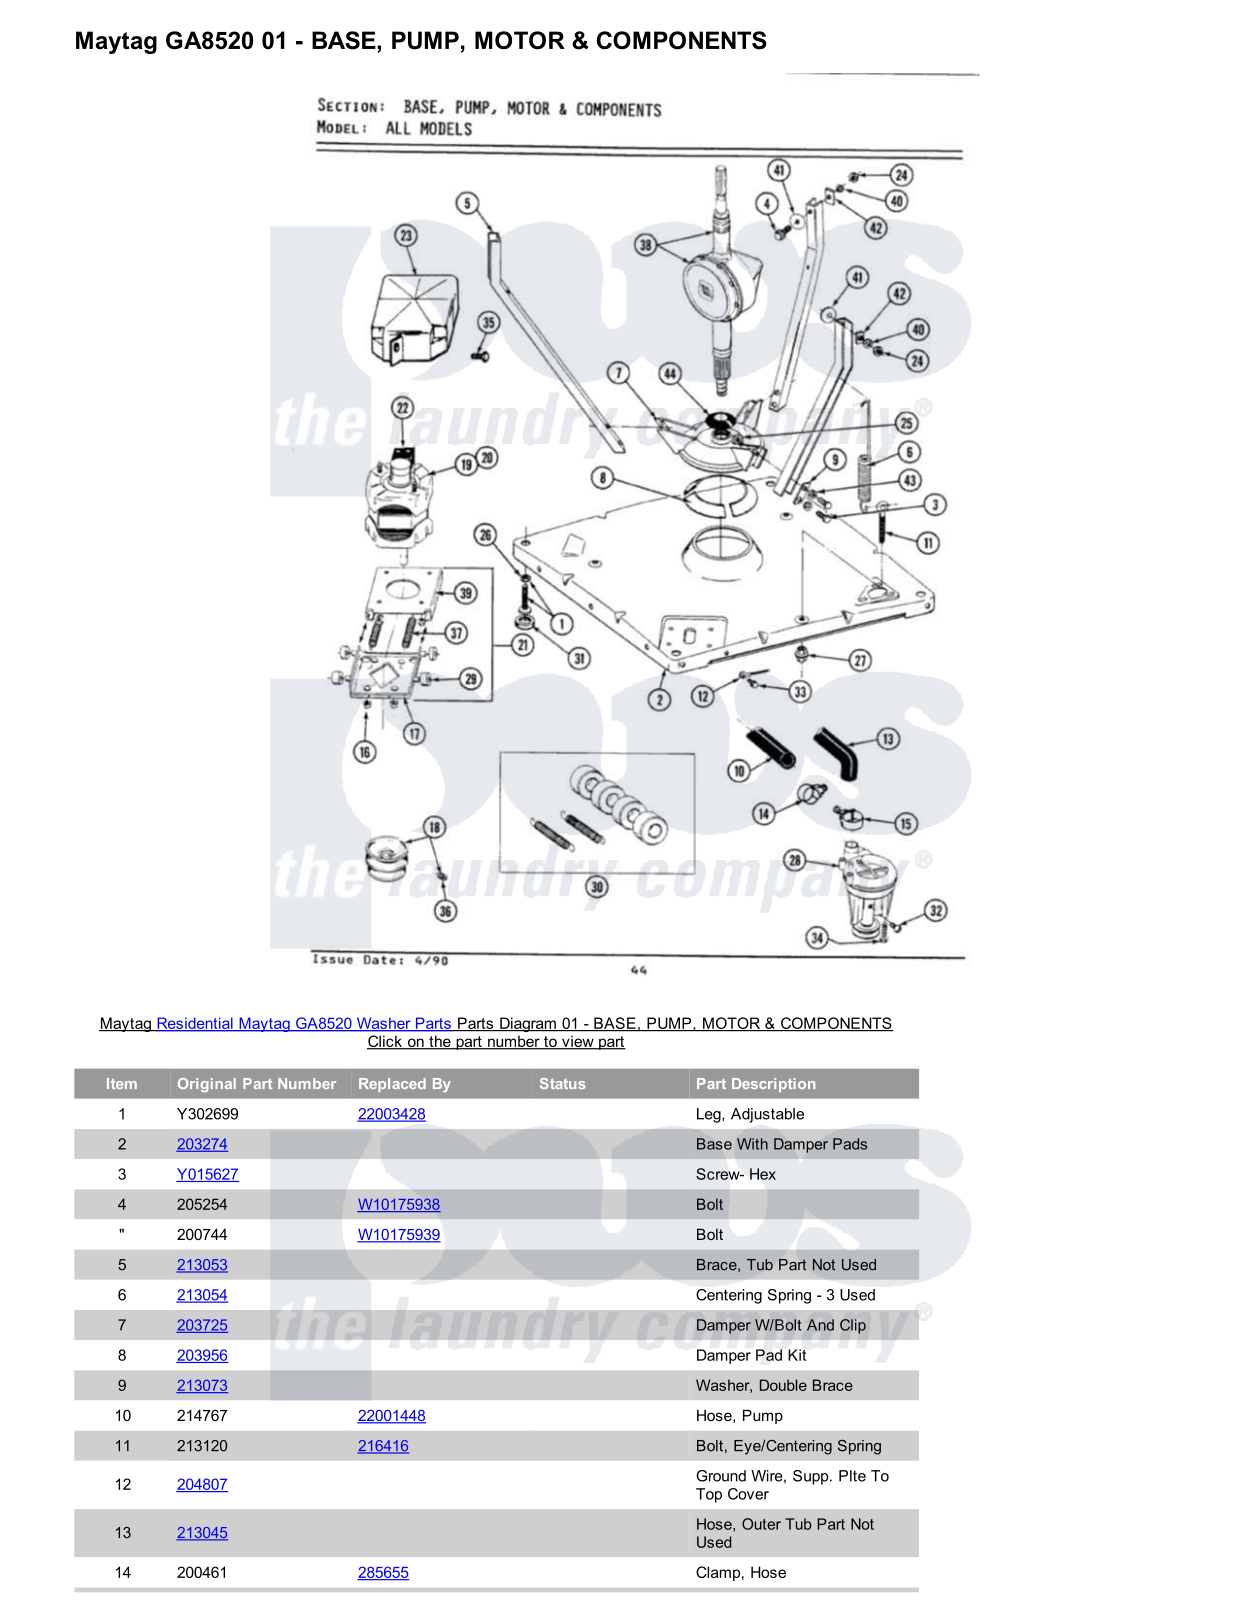 Maytag GA8520 Parts Diagram